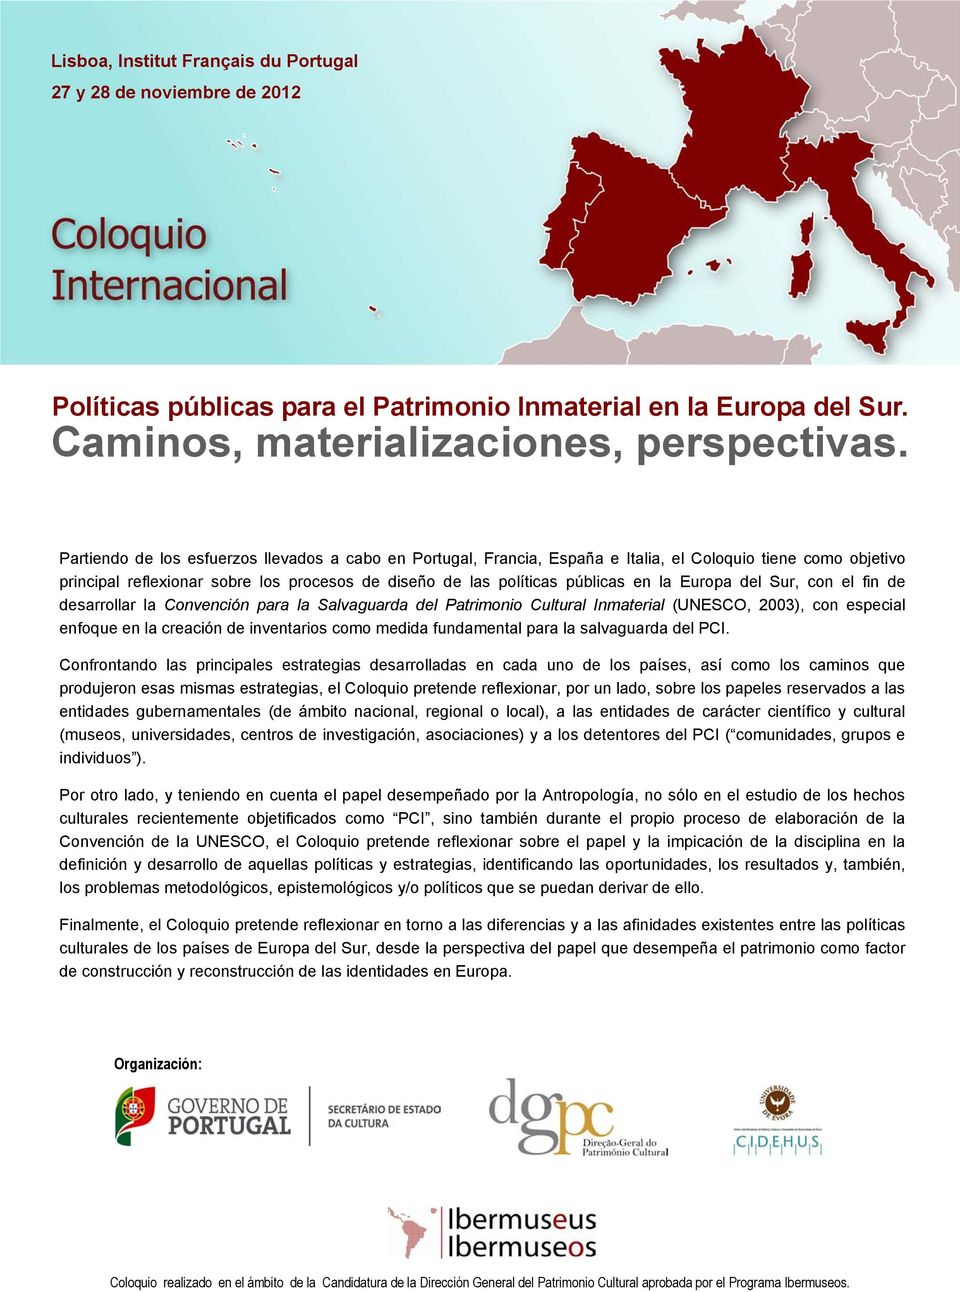 Europa del Sur, con el fin de desarrollar la Convención para la Salvaguarda del Patrimonio Cultural Inmaterial (UNESCO, 2003), con especial enfoque en la creación de inventarios como medida